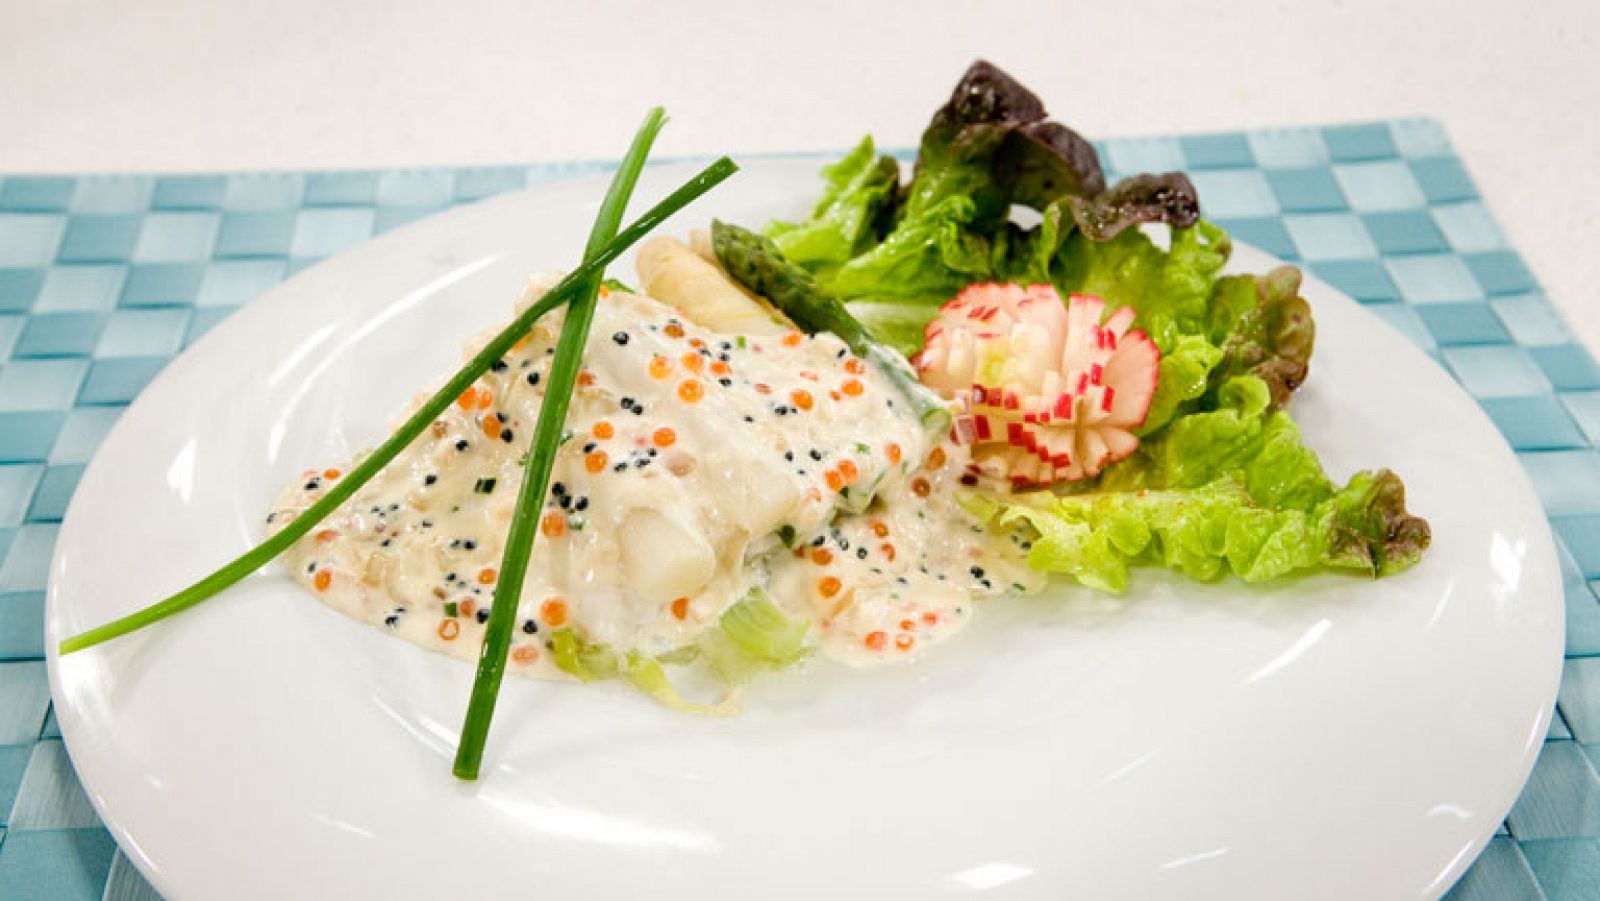   Saber cocinar - Papillotes de pescadilla con espárragos en salsa caviar 